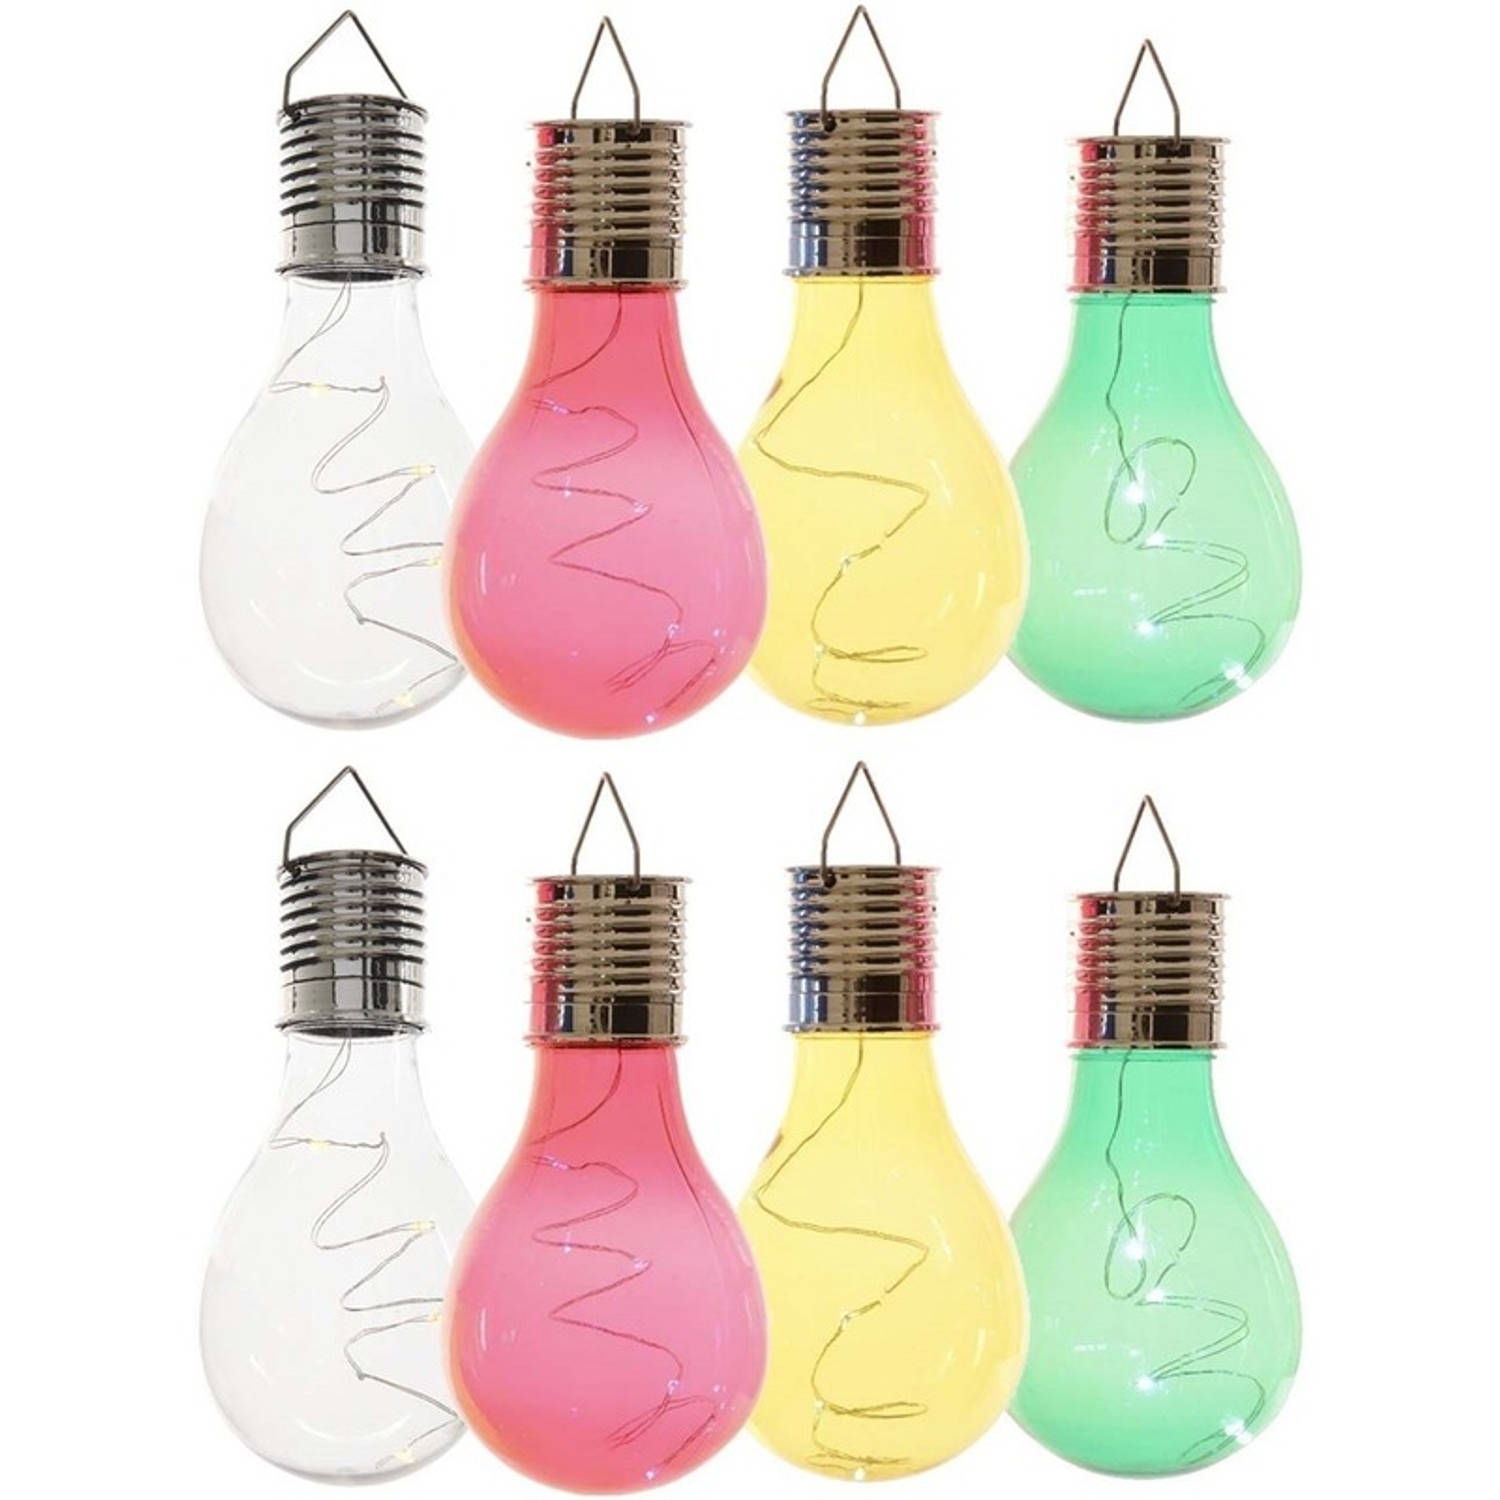 8x Buitenlampen/tuinlampen lampbolletjes/peertjes 14 cm transparant/groen/geel/rood - Buitenverlichting